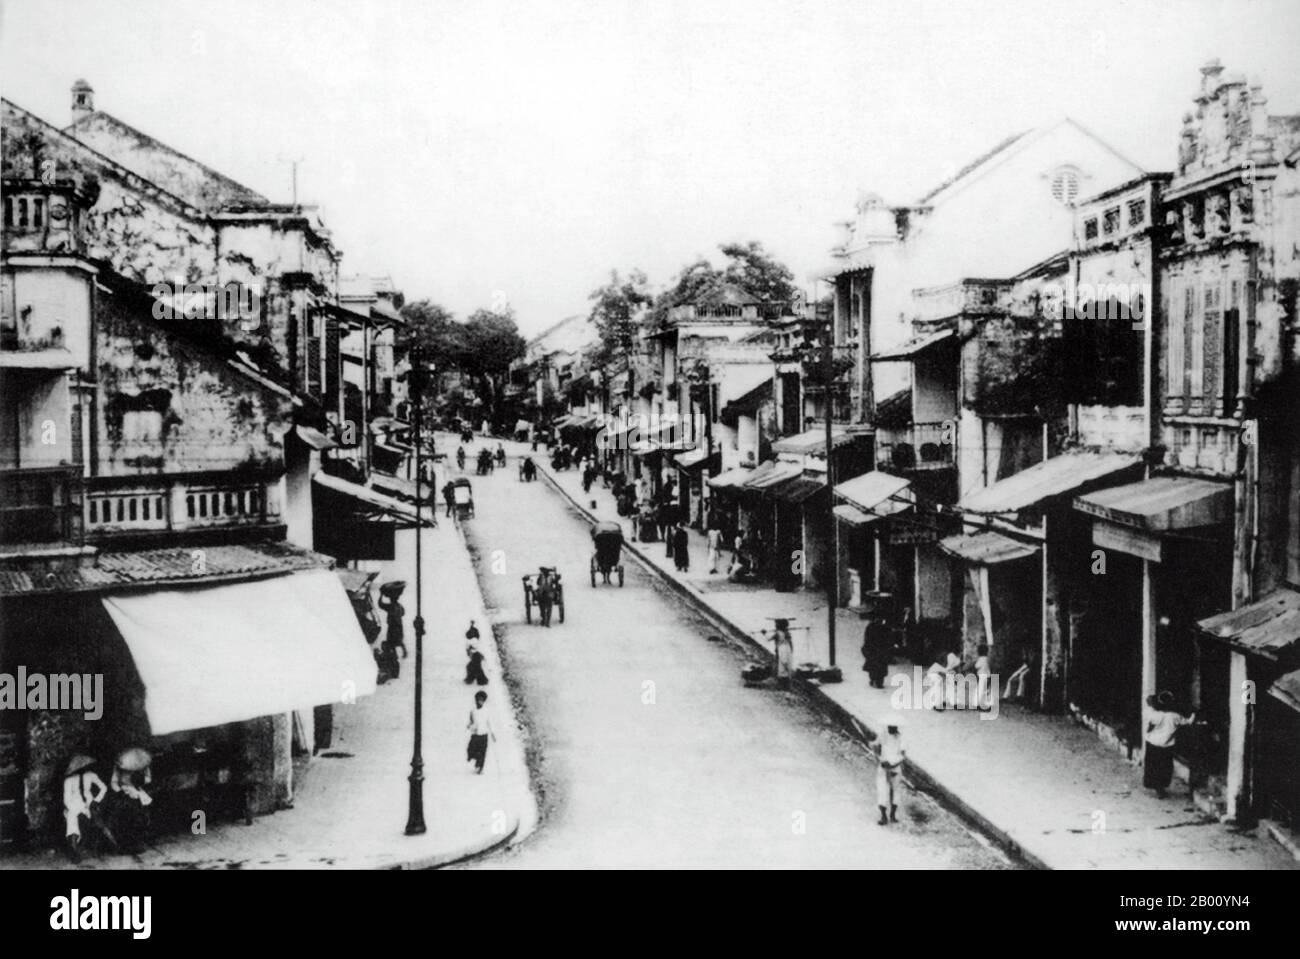 Vietnam: Hang Hom oder Holzkisten Straße, Altstadt, Hanoi (Anfang 20th Jahrhundert). Die Altstadt, in der Nähe des Hoan Kiem Sees, bestand Anfang des 20th. Jahrhunderts nur aus etwa 36 Straßen. Jede Straße hatte dann Händler und Haushalte, die auf einen bestimmten Handel spezialisiert waren, wie Seidenhändler, Schmuck, Silberschmiede, etc. Die meisten Straßennamen in Hanois Altstadt beginnen "hängen", was "Hop" oder "Händler" bedeutet. Die Namen stehen noch heute und die Gegend ist beliebt für Handel und Waren sowie Nachtleben. Stockfoto